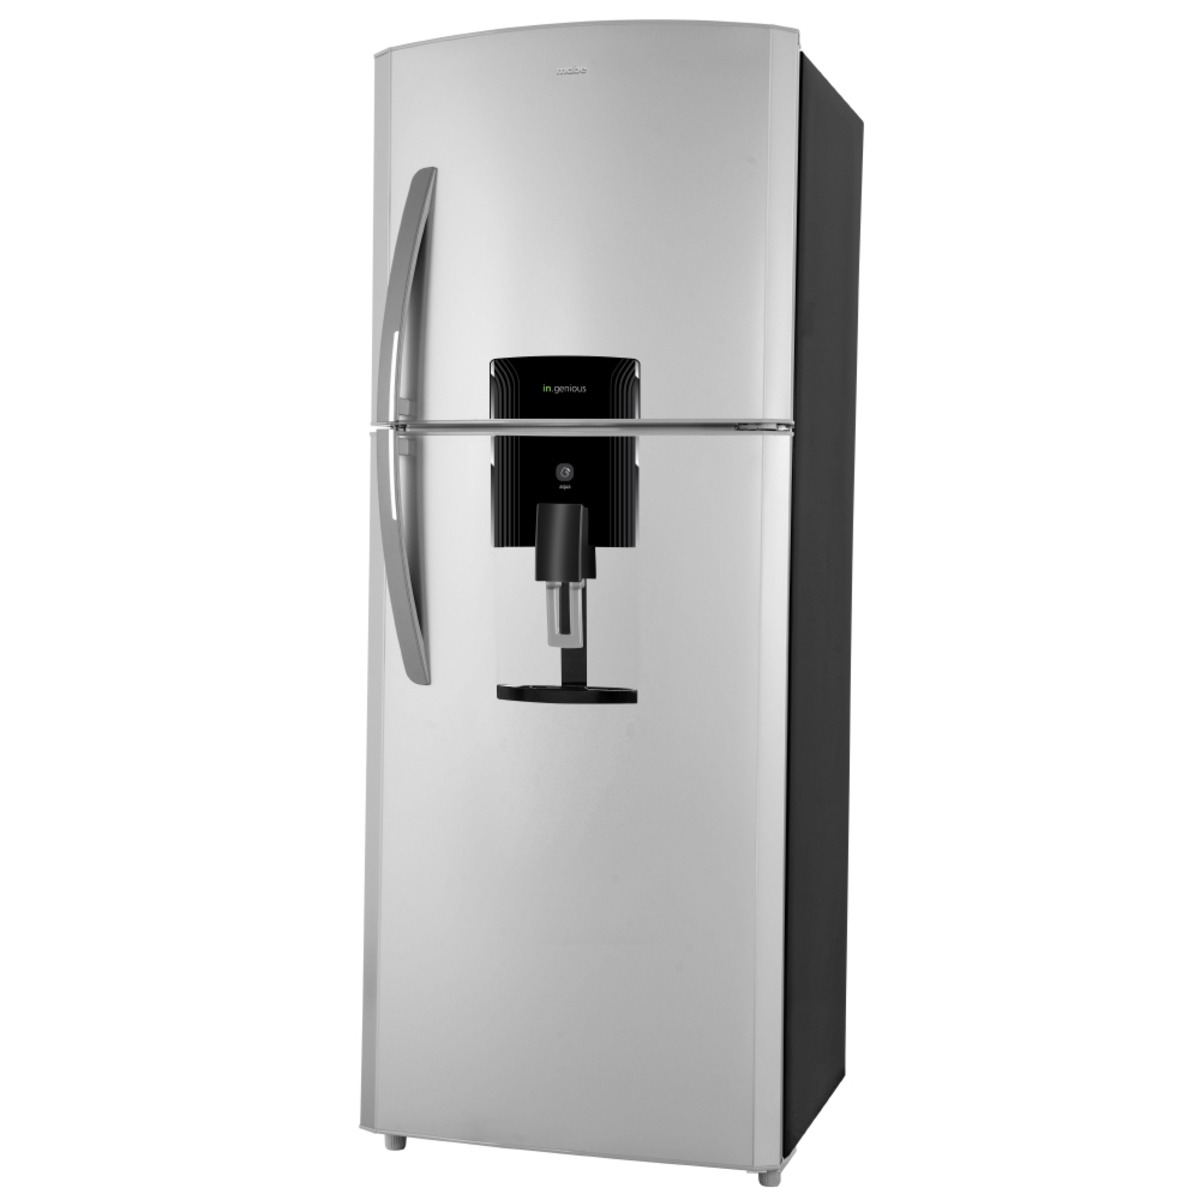 Refrigerador Mabe 14 pies con despachador de agua - Ryse